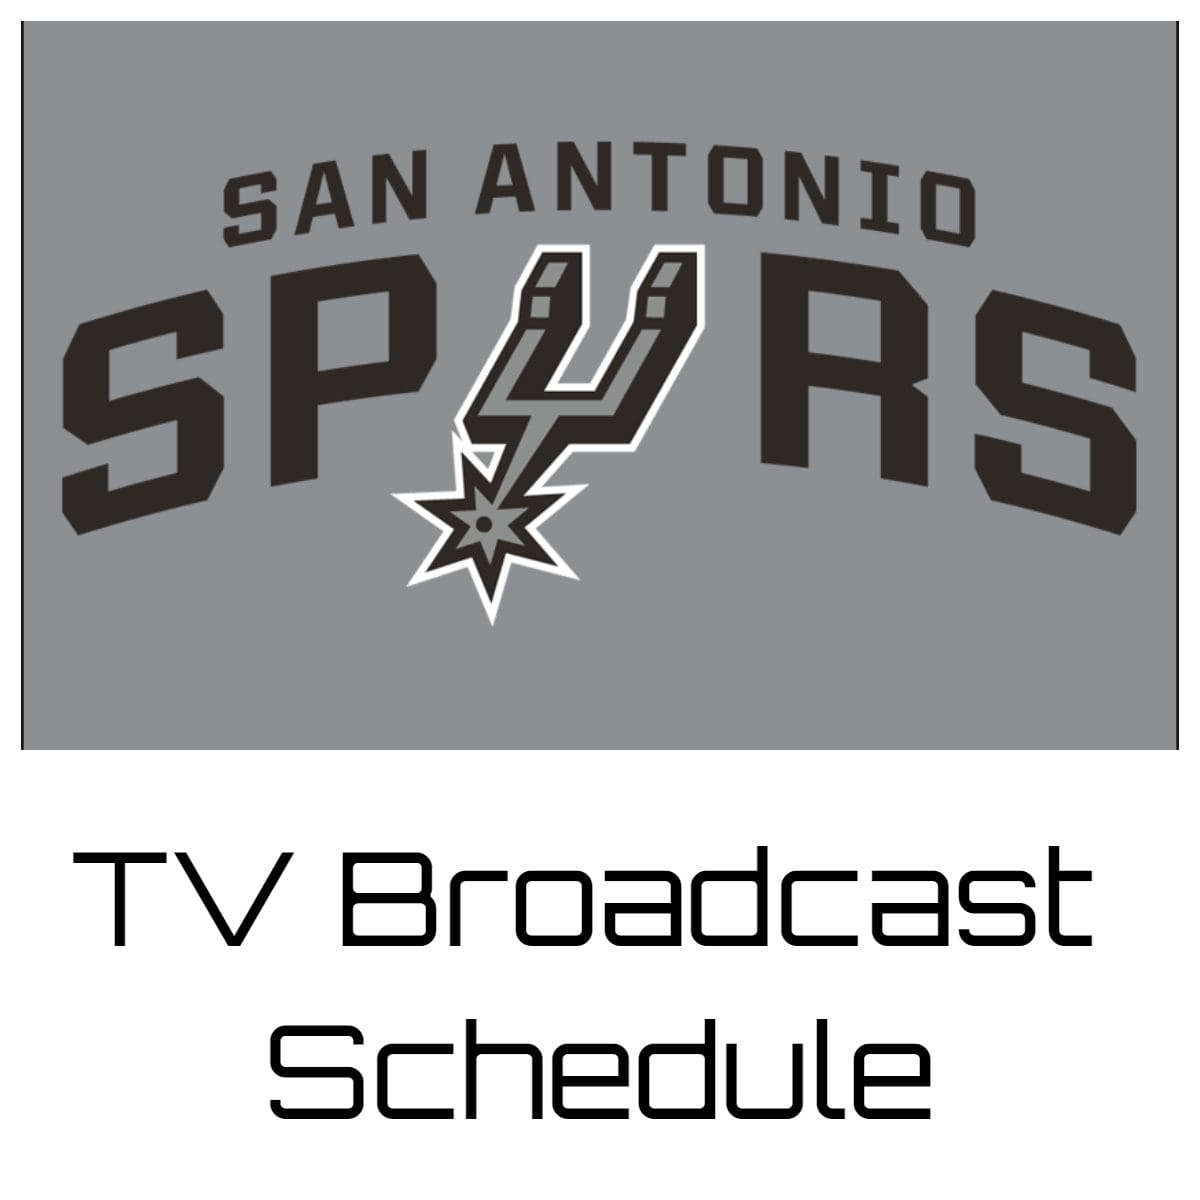 San Antonio Spurs TV Broadcast Schedule